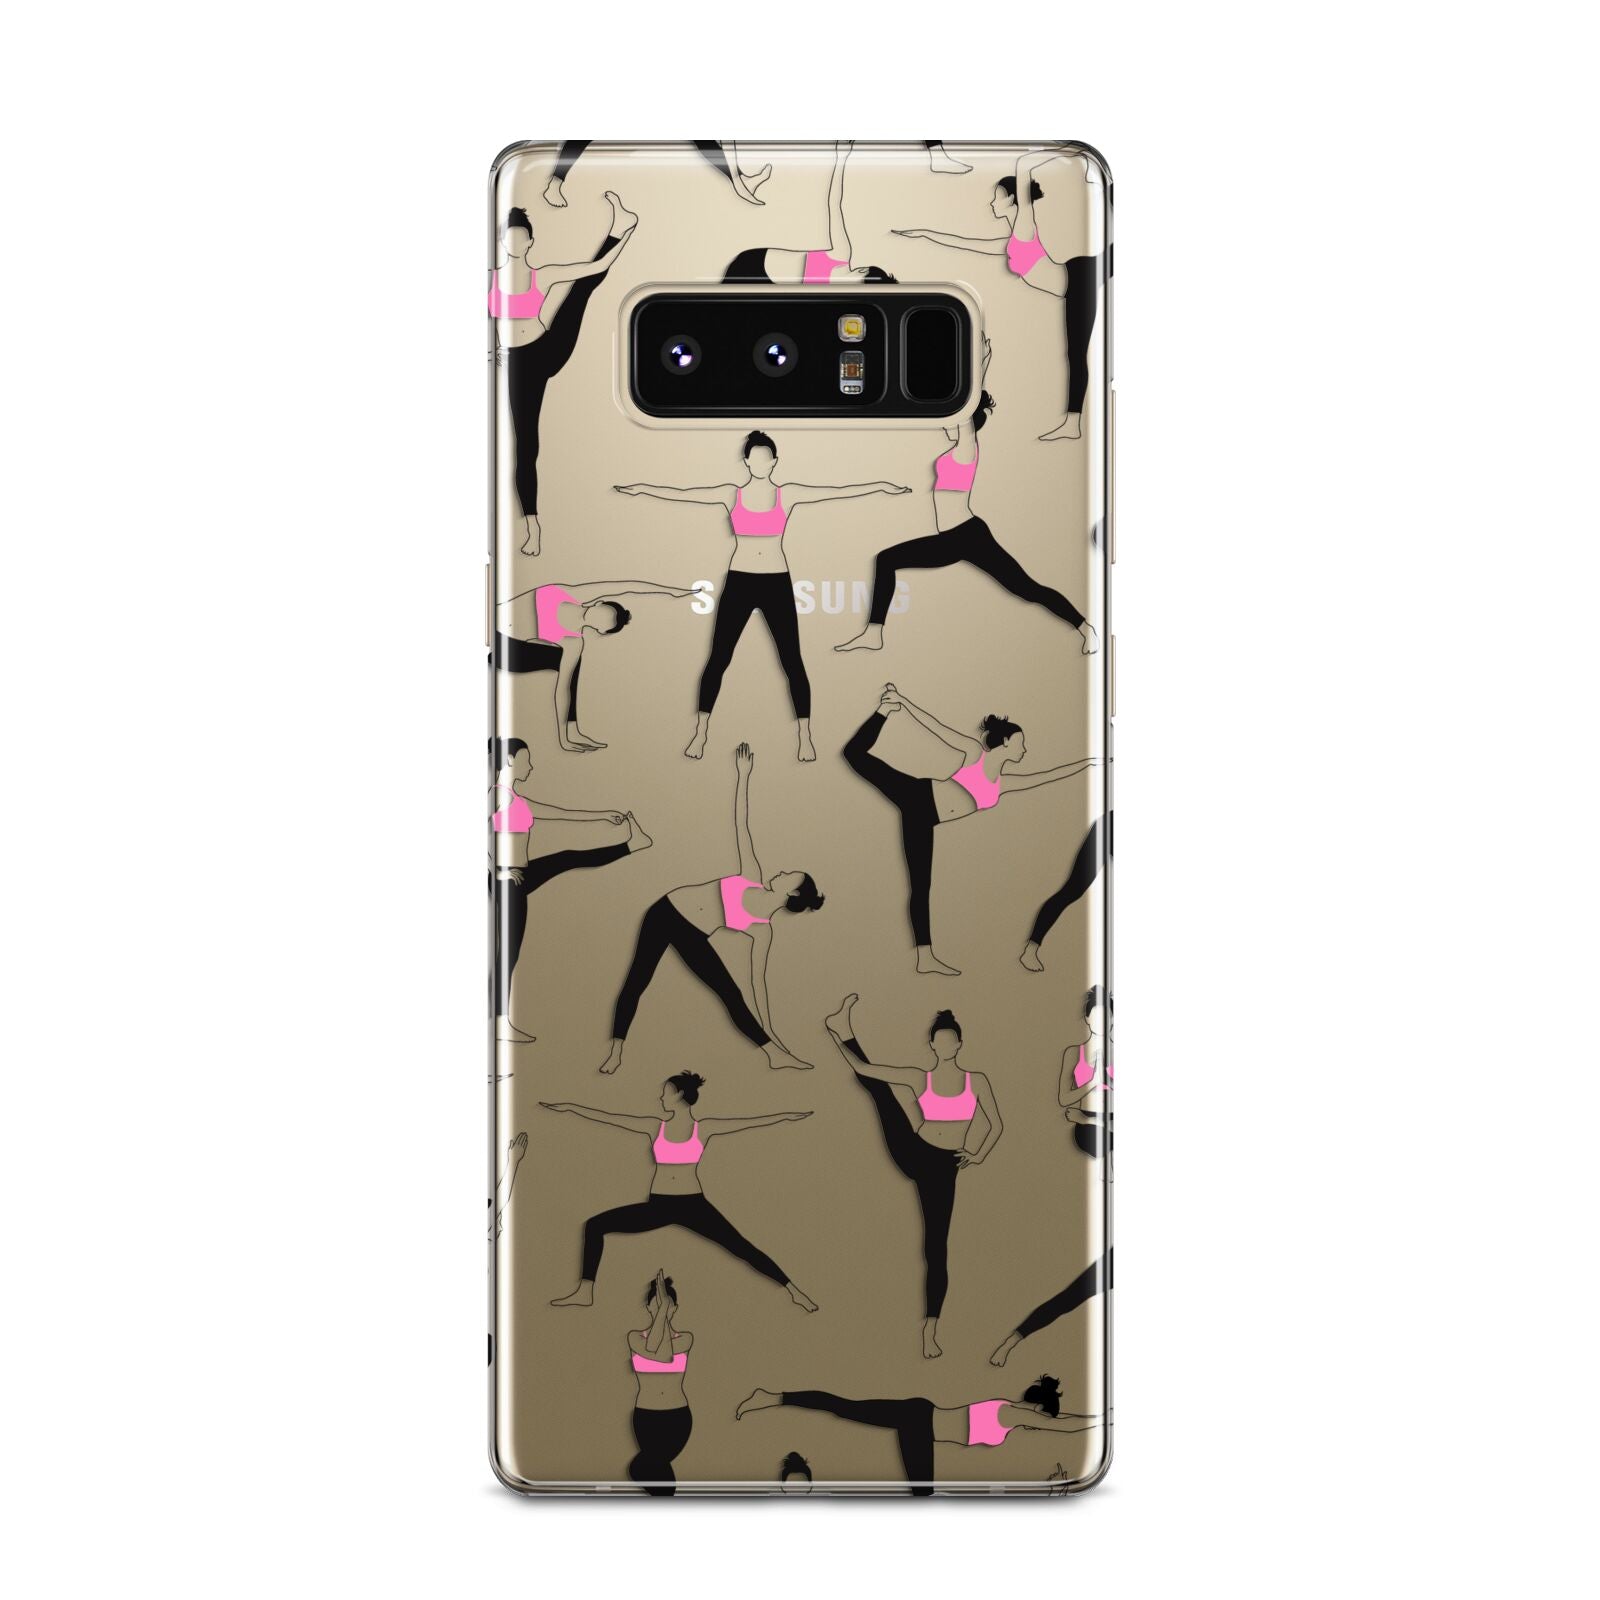 Yoga Samsung Galaxy Note 8 Case